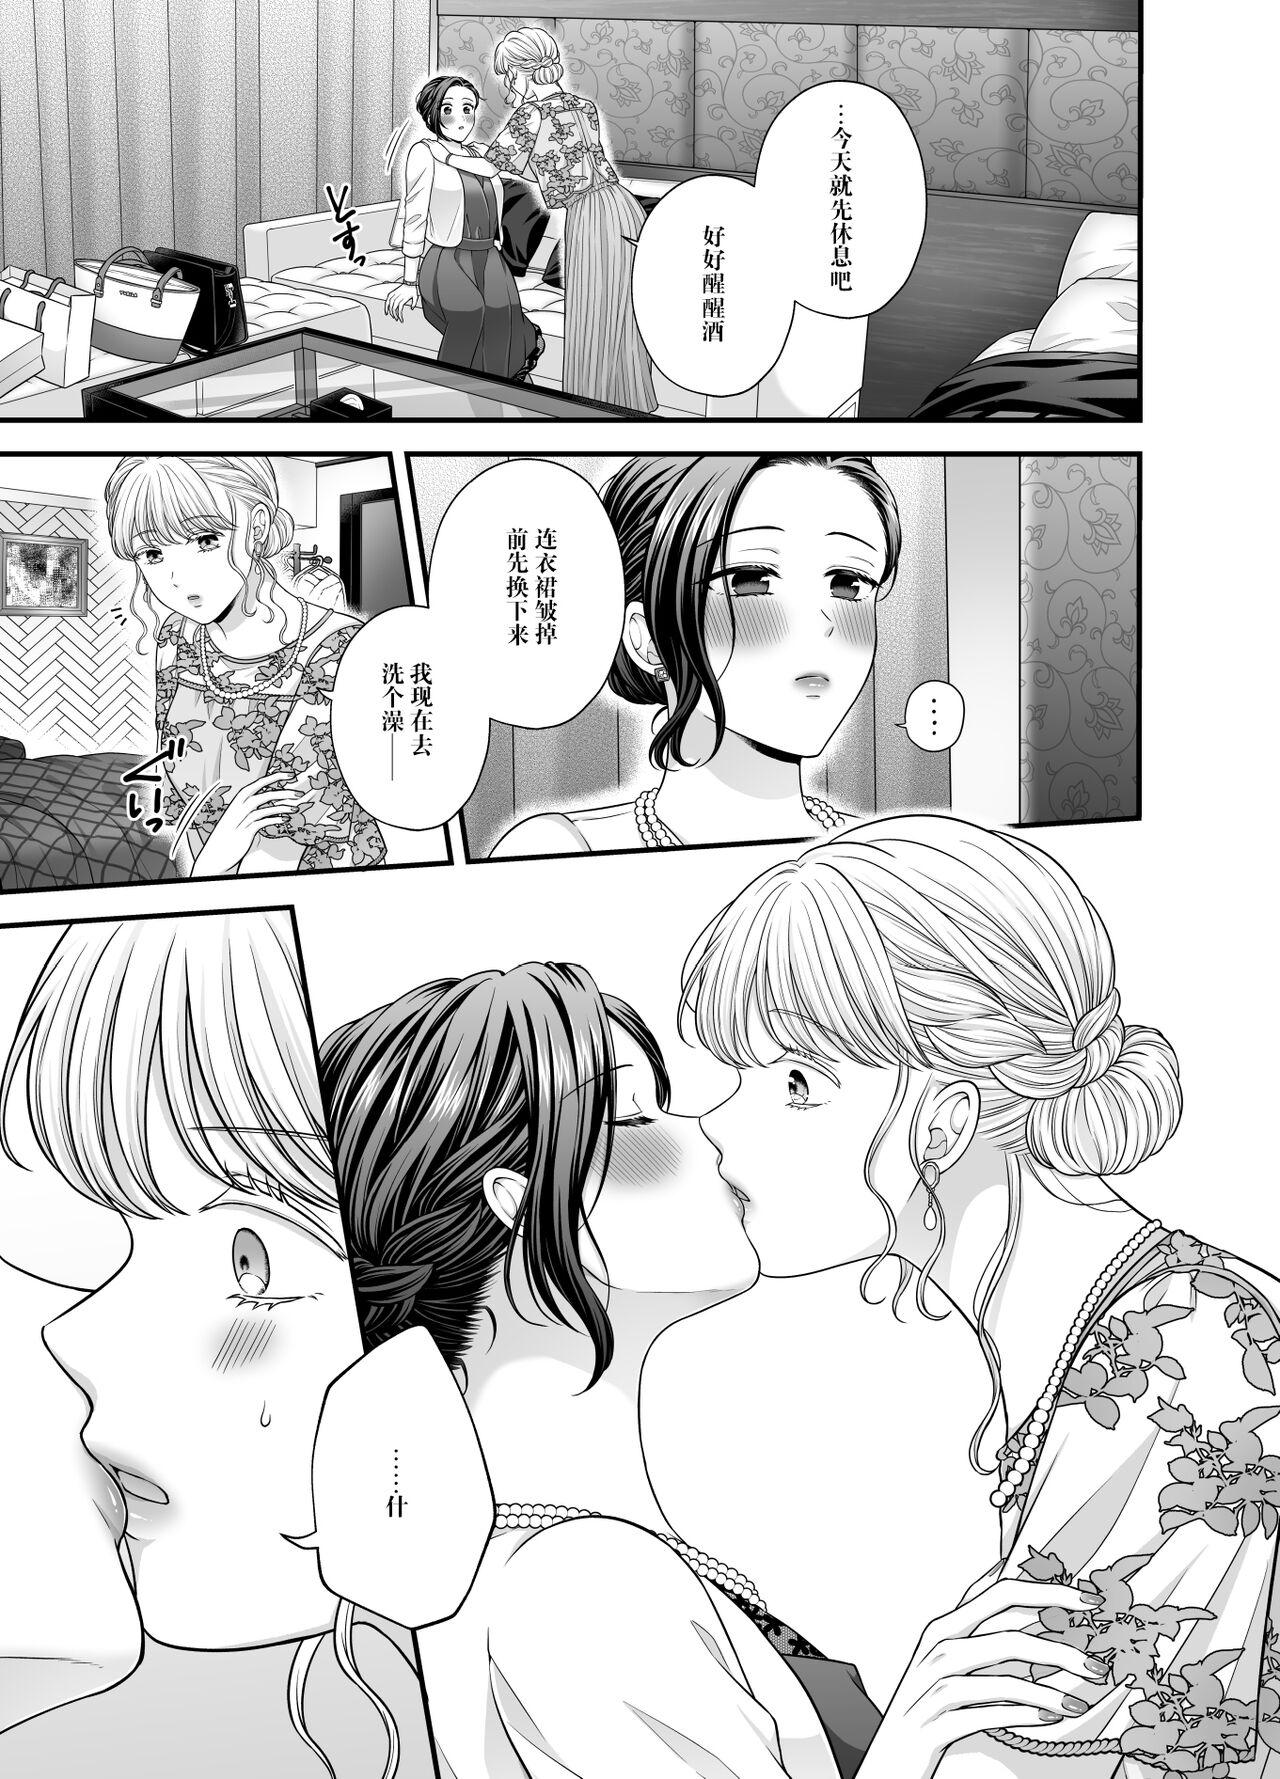 Sis Night after party / Kekkonshiki Kaeri no Yoru Sucking Cock - Page 5